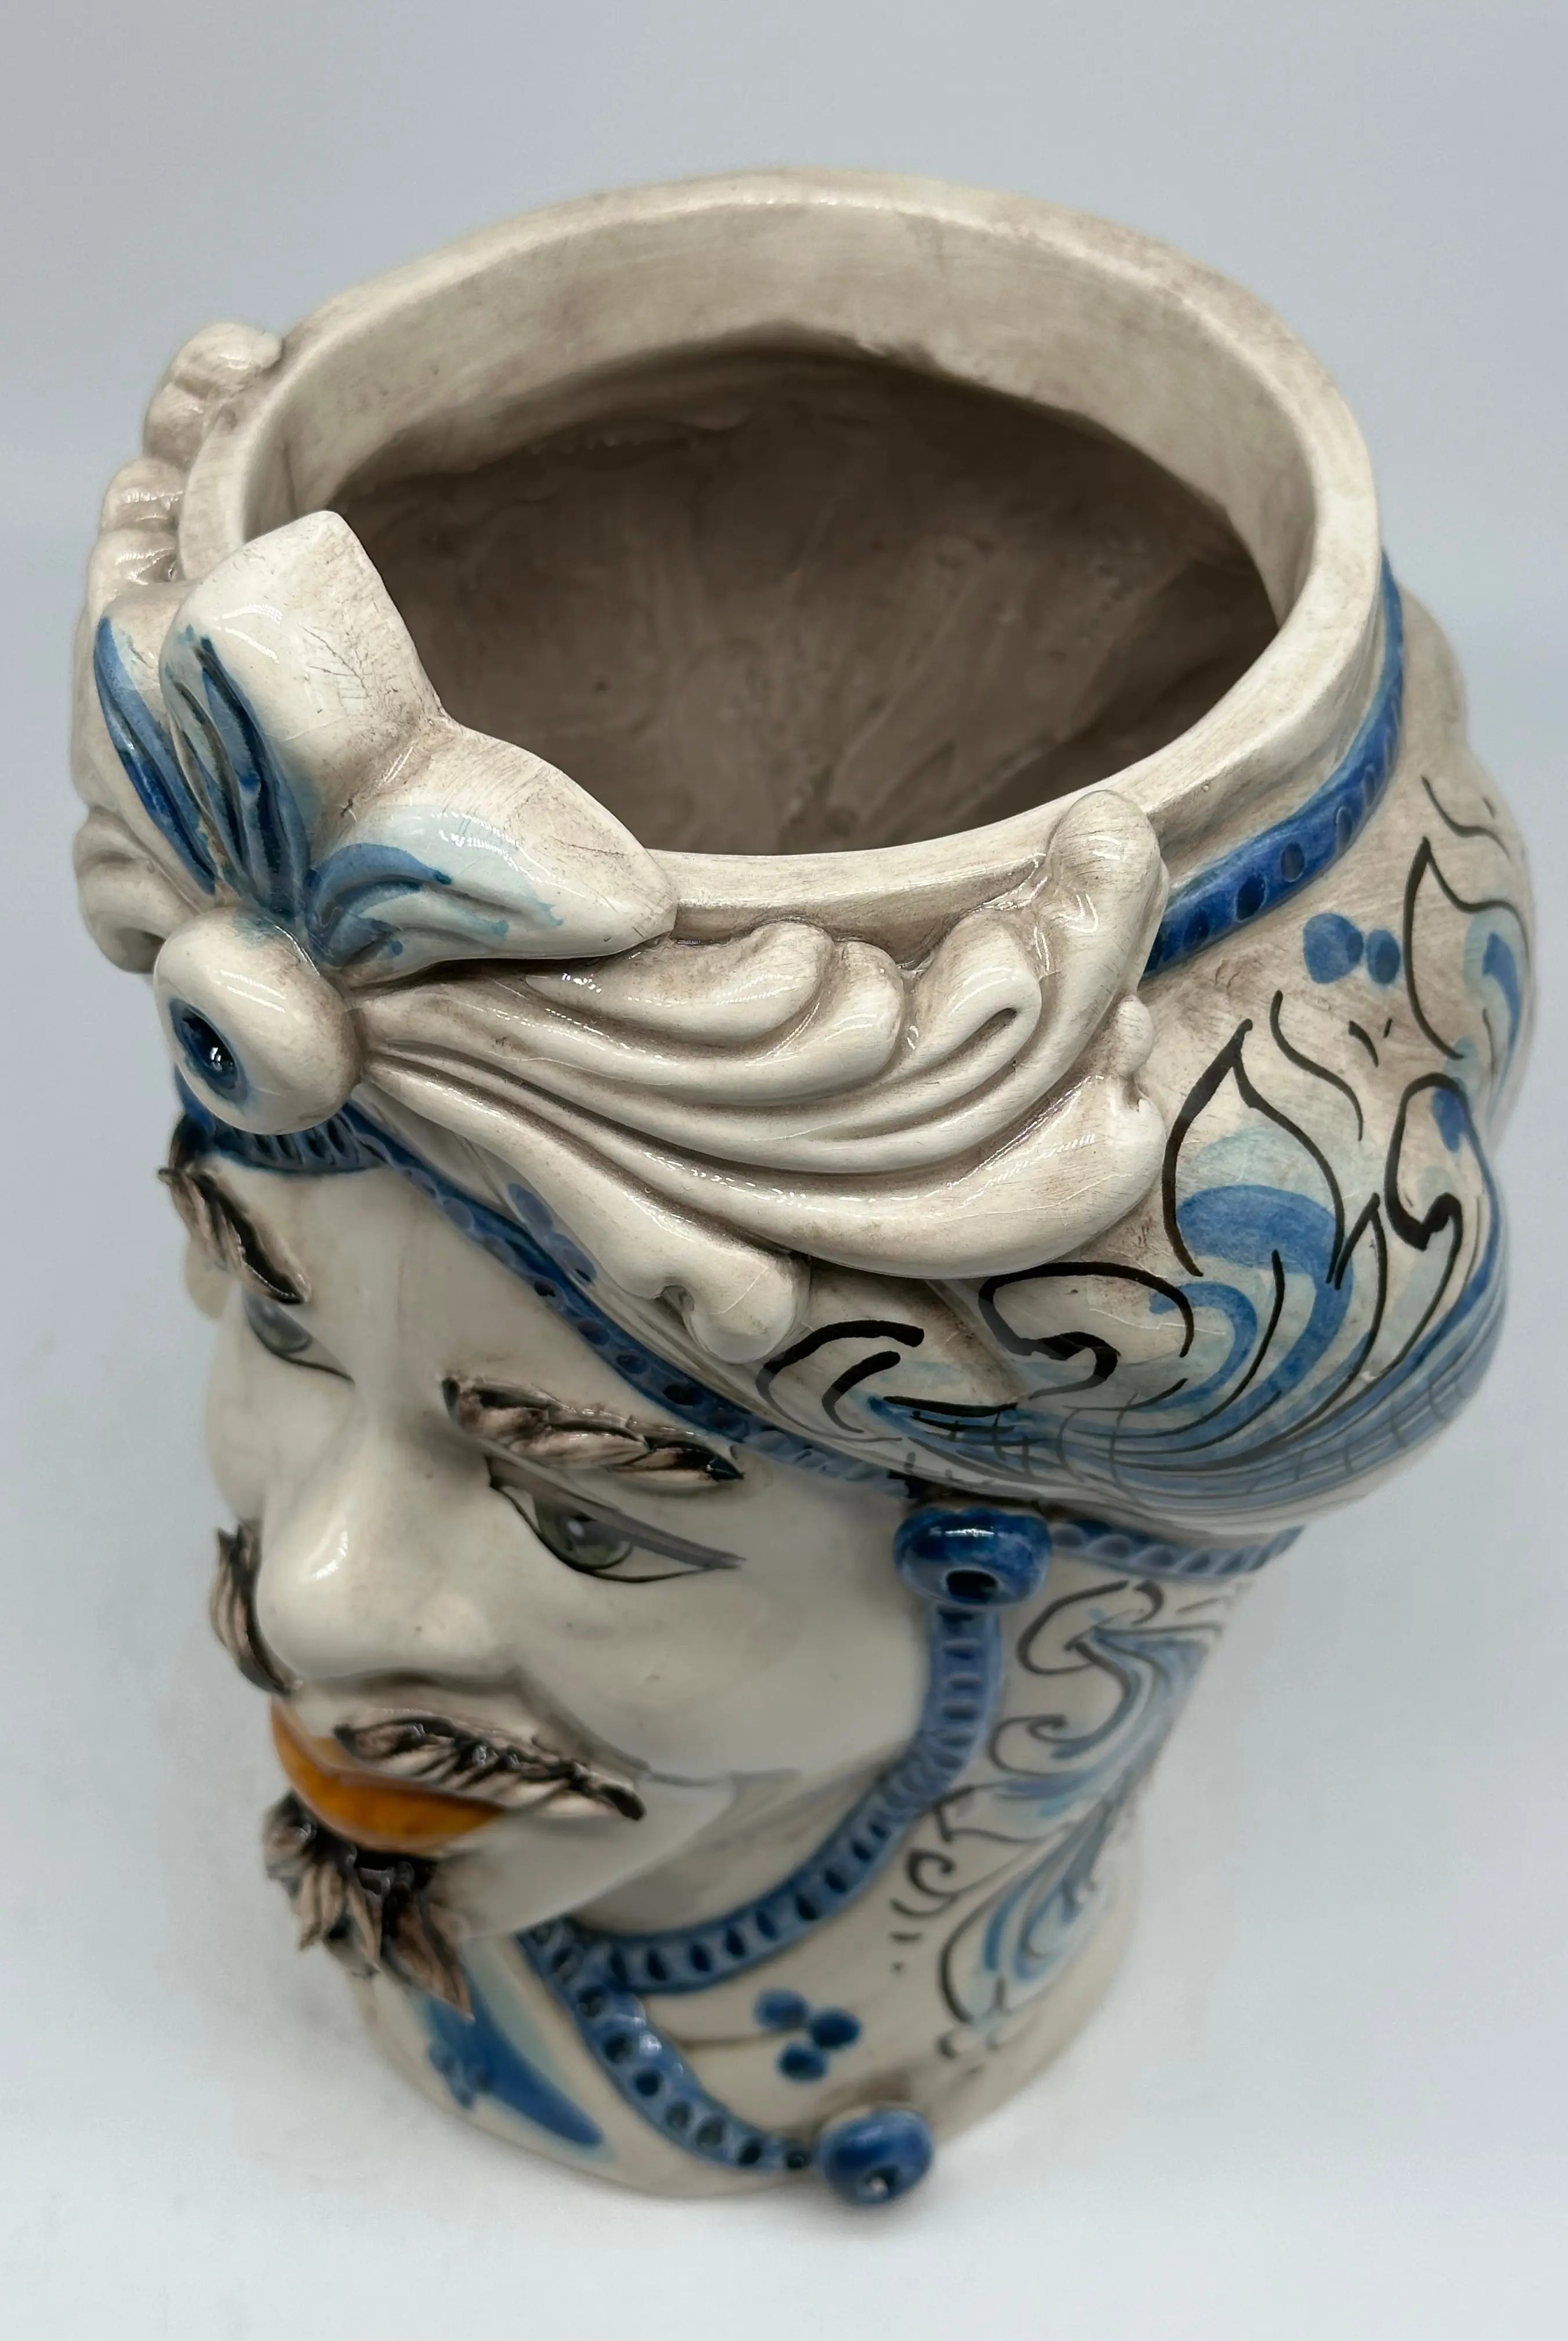 FINE SERIE - Testa di Moro Uomo Moresca Ceramica Caltagirone cm H.28 L.19 Artigianale Barocco Azzurro DD CERAMICHE SICILIANE